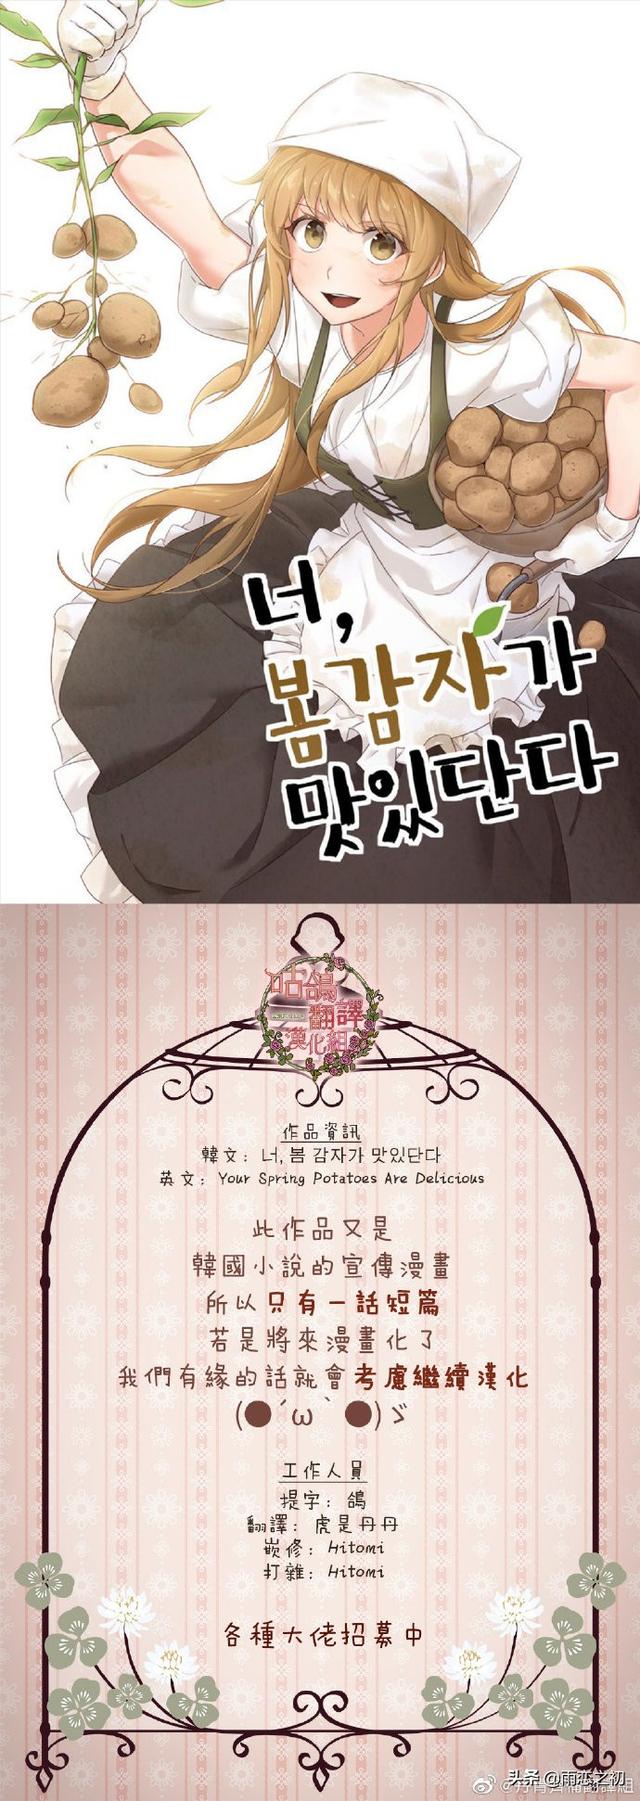 柑橘味的恋爱漫画（韩国漫画你春马铃薯很美味）(12)